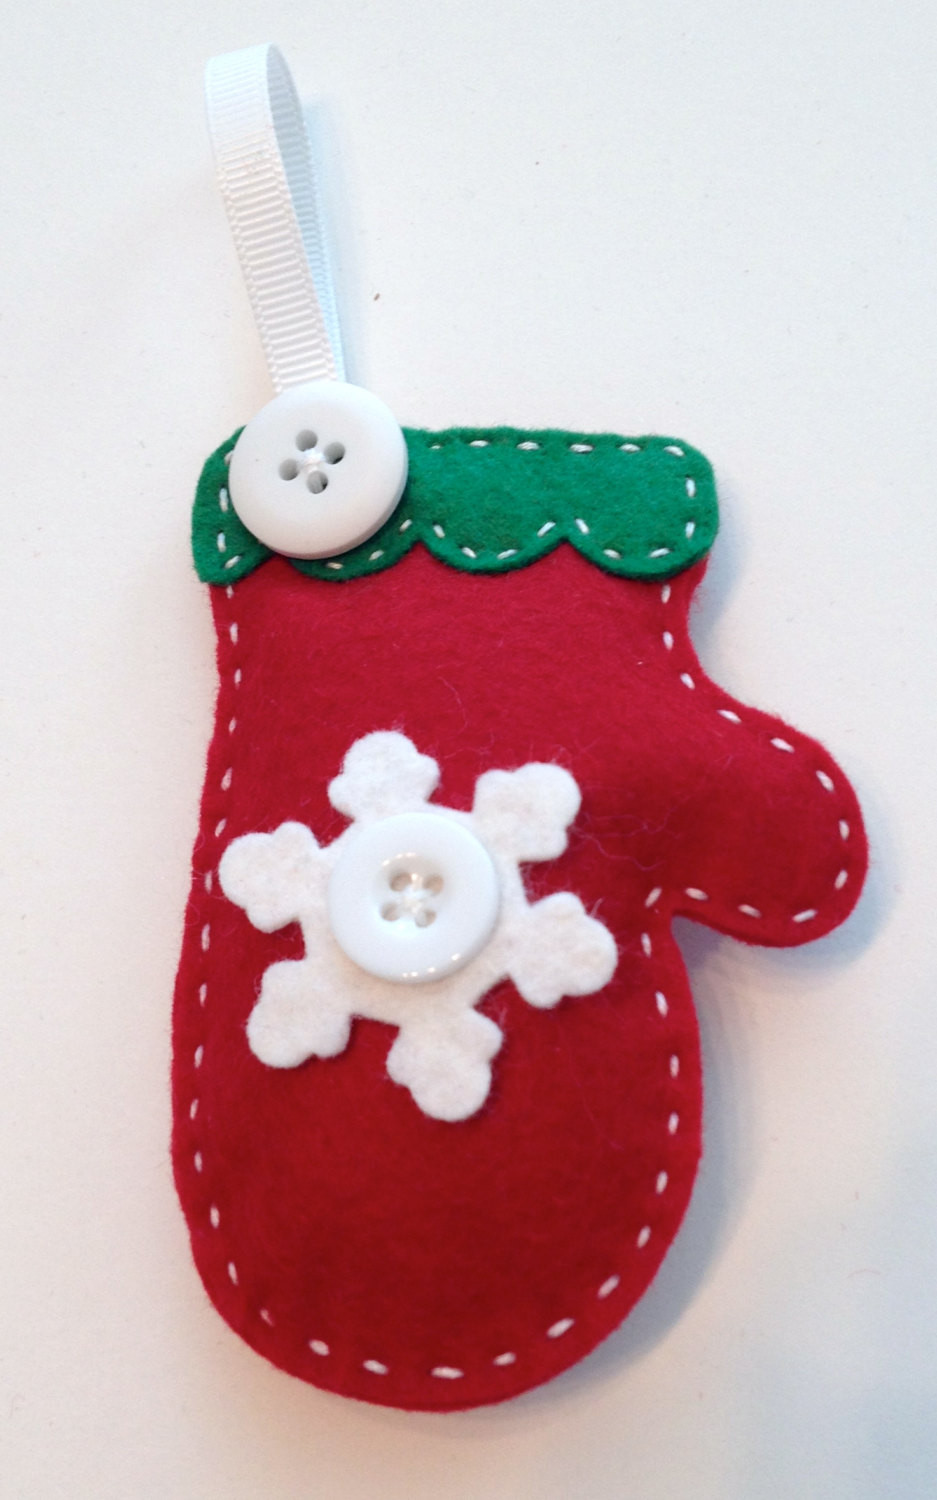 Best ideas about DIY Felt Ornaments
. Save or Pin DIY Snowflake Mitten Felt Ornament KIT Now.